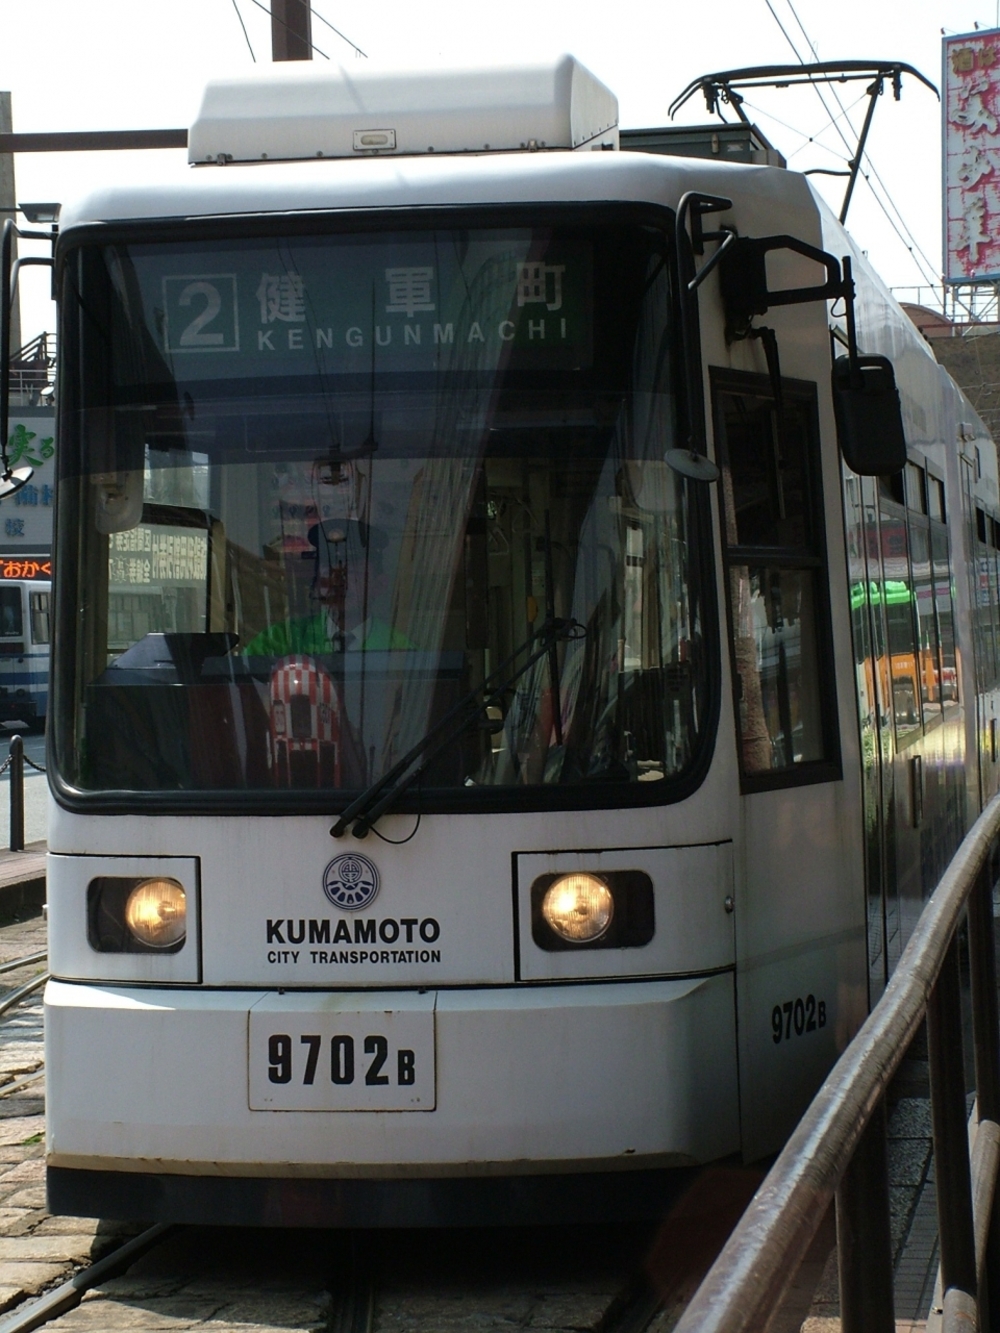 구마모토시내에는 전차가 다닙니다. 간혹 우리가 타고 이동한 안내양이 있는 관광전차도 있습니다.